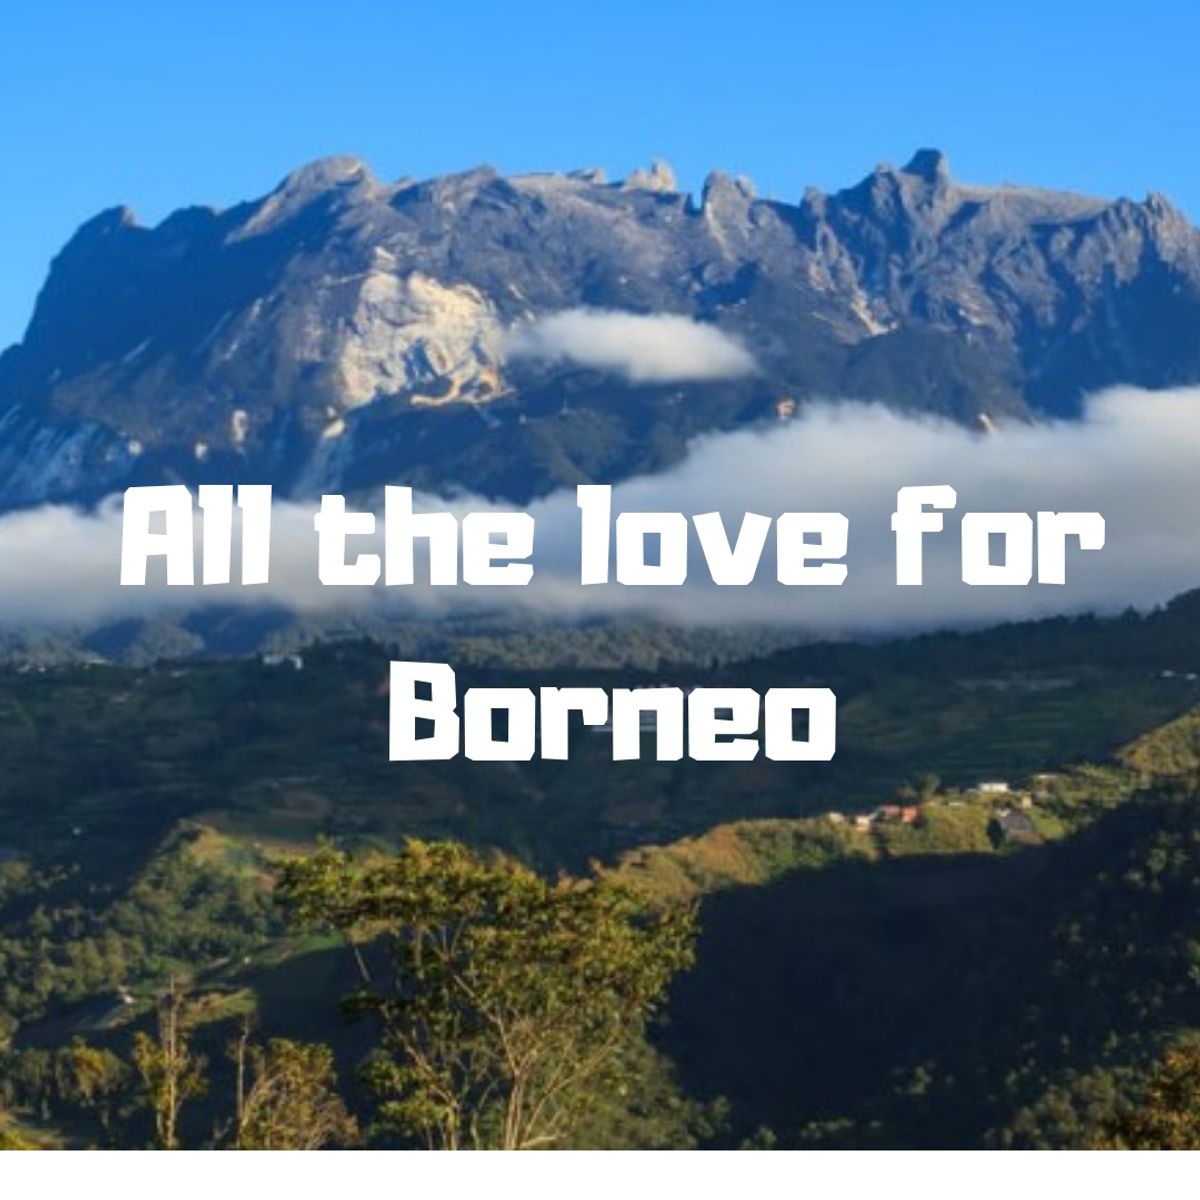 All the love for Borneo